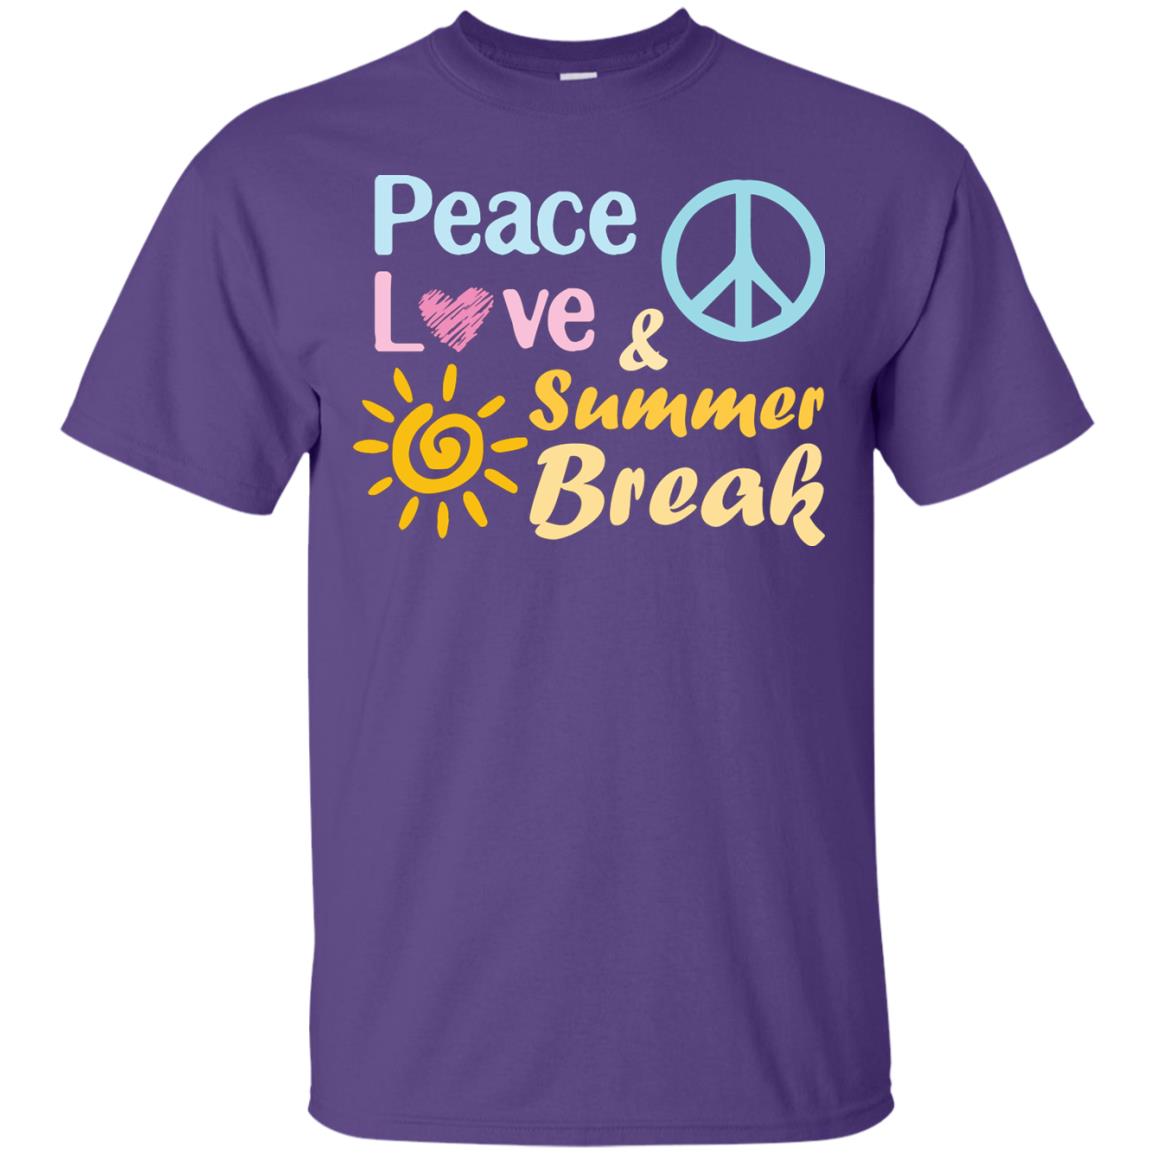 Peace Love And Summer Break Shirt For Summer Vacation 2018G200 Gildan Ultra Cotton T-Shirt